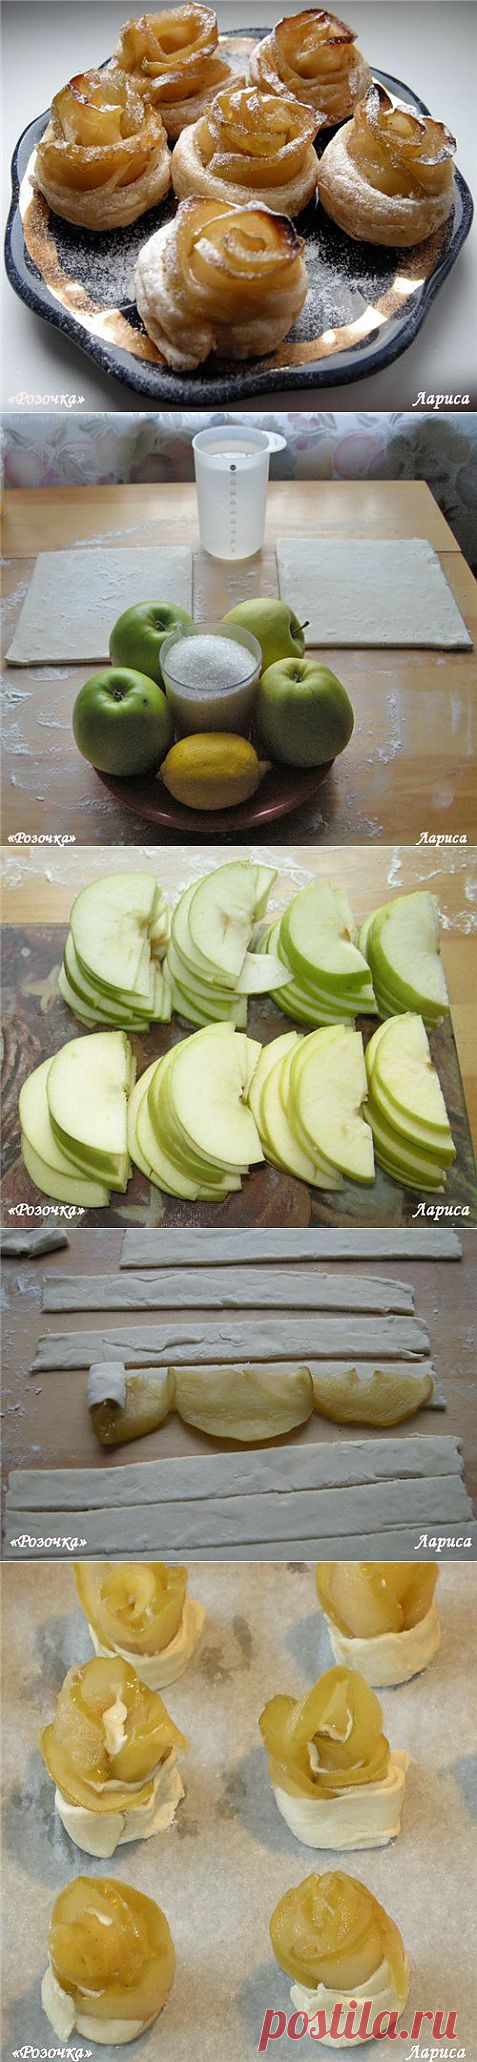 Пирожное «Розочка» с яблоками от Александра Селезнева.